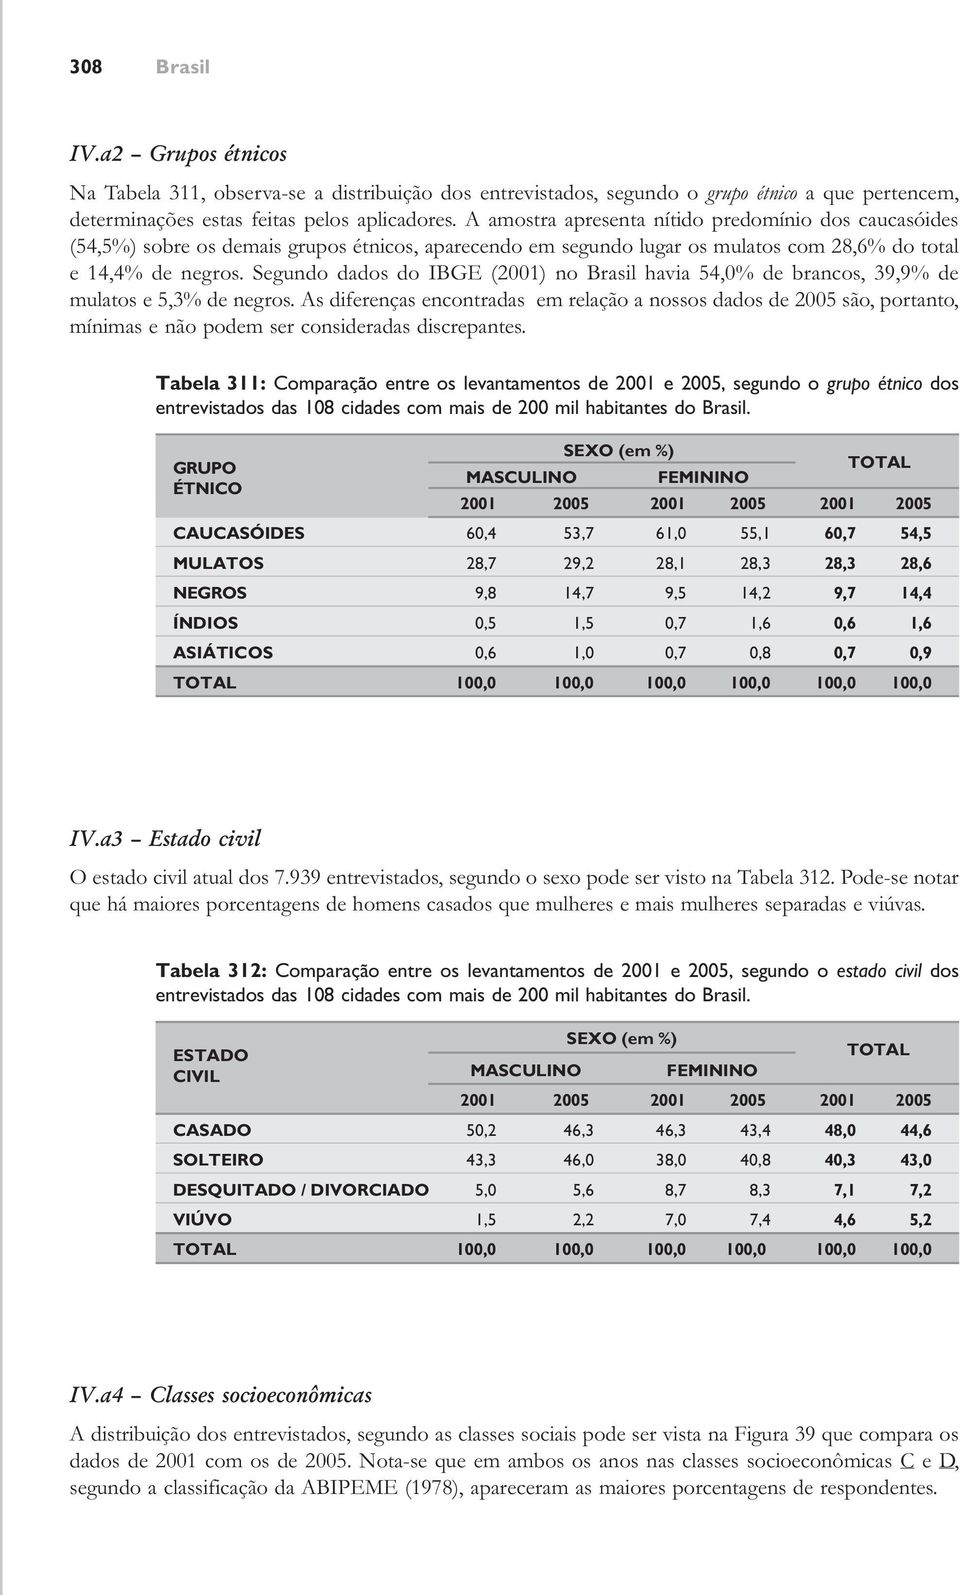 Segundo dados do IBGE (2001) no havia 54,0% de brancos, 39,9% de mulatos e 5,3% de negros.